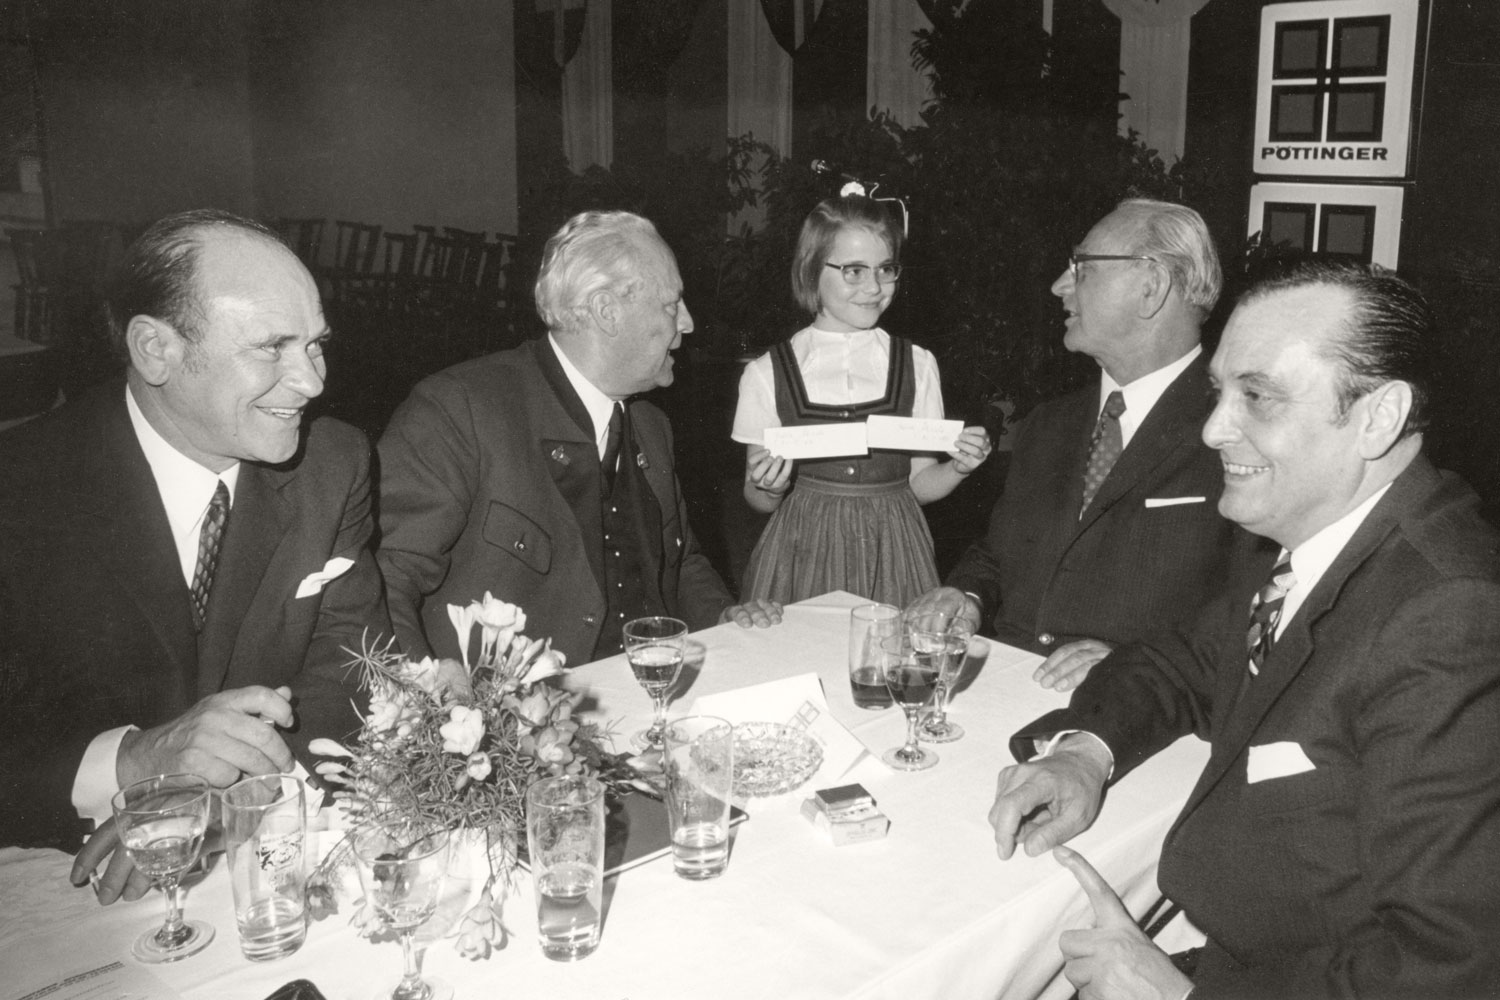 L'attenzione del cancelliere Franz Jonas (secondo da destra) è completamente rivolta alla signorina accanto al tavolo.